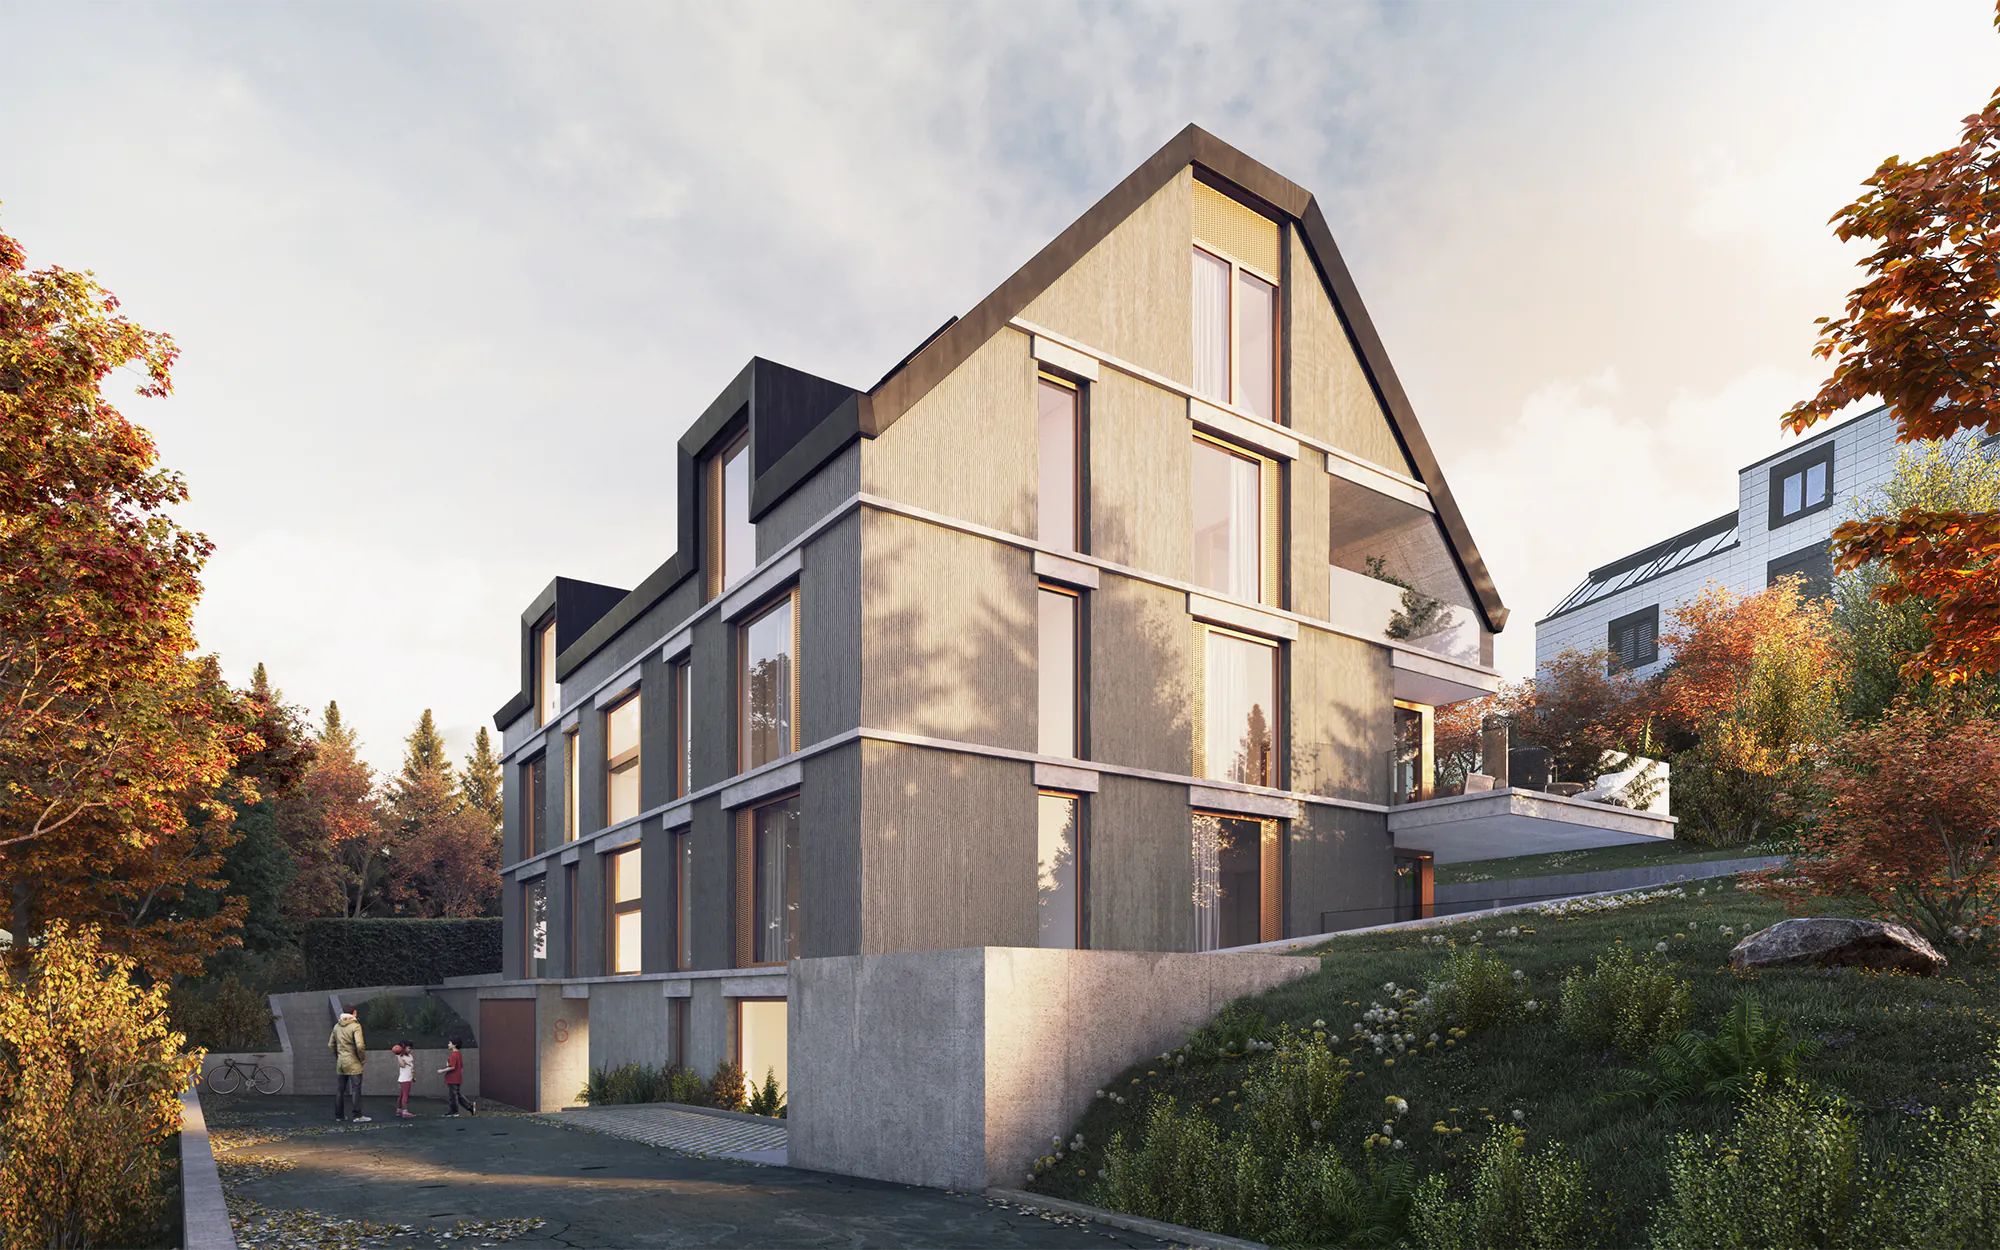 Aussenvisualisierung eines Mehrfamilienhauses in Ruschlikon, Zürich.